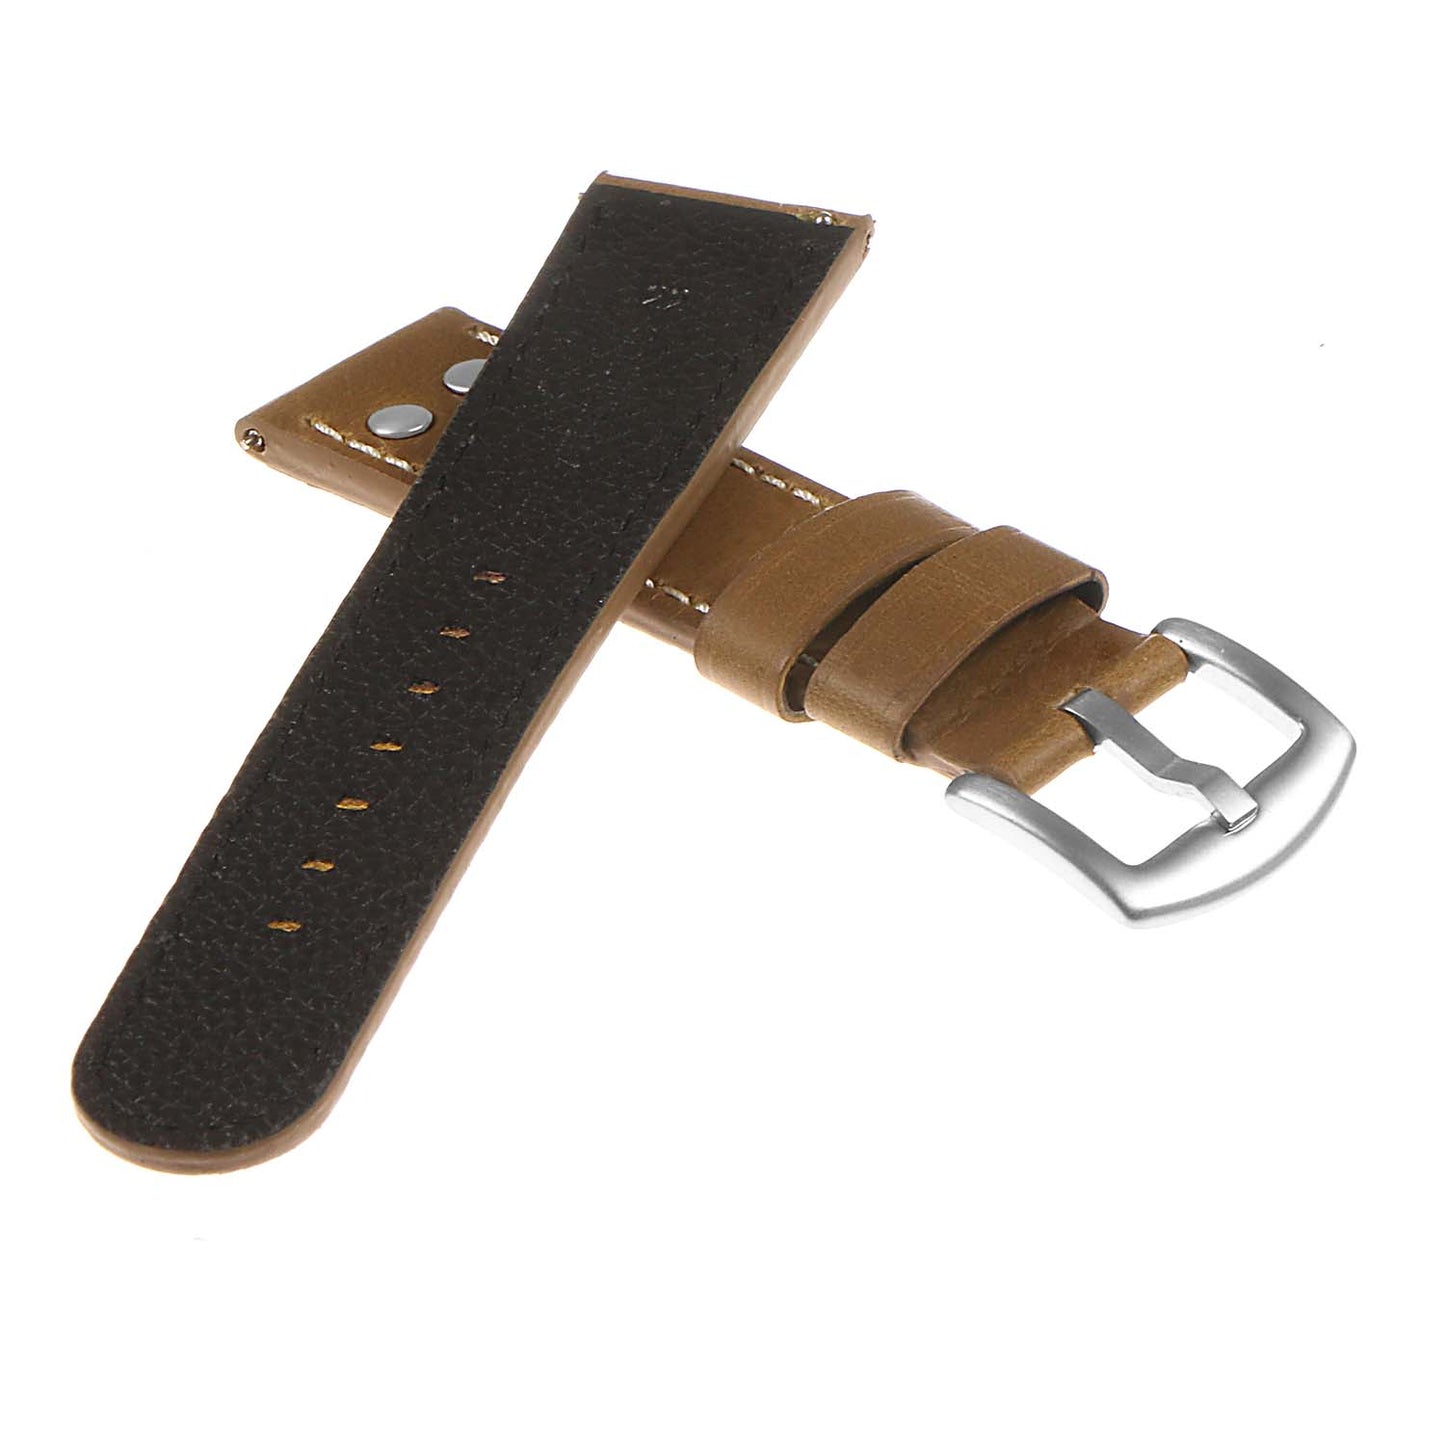 DASSARI Vintage Leather Pilot Watch Band for Samsung Galaxy Watch